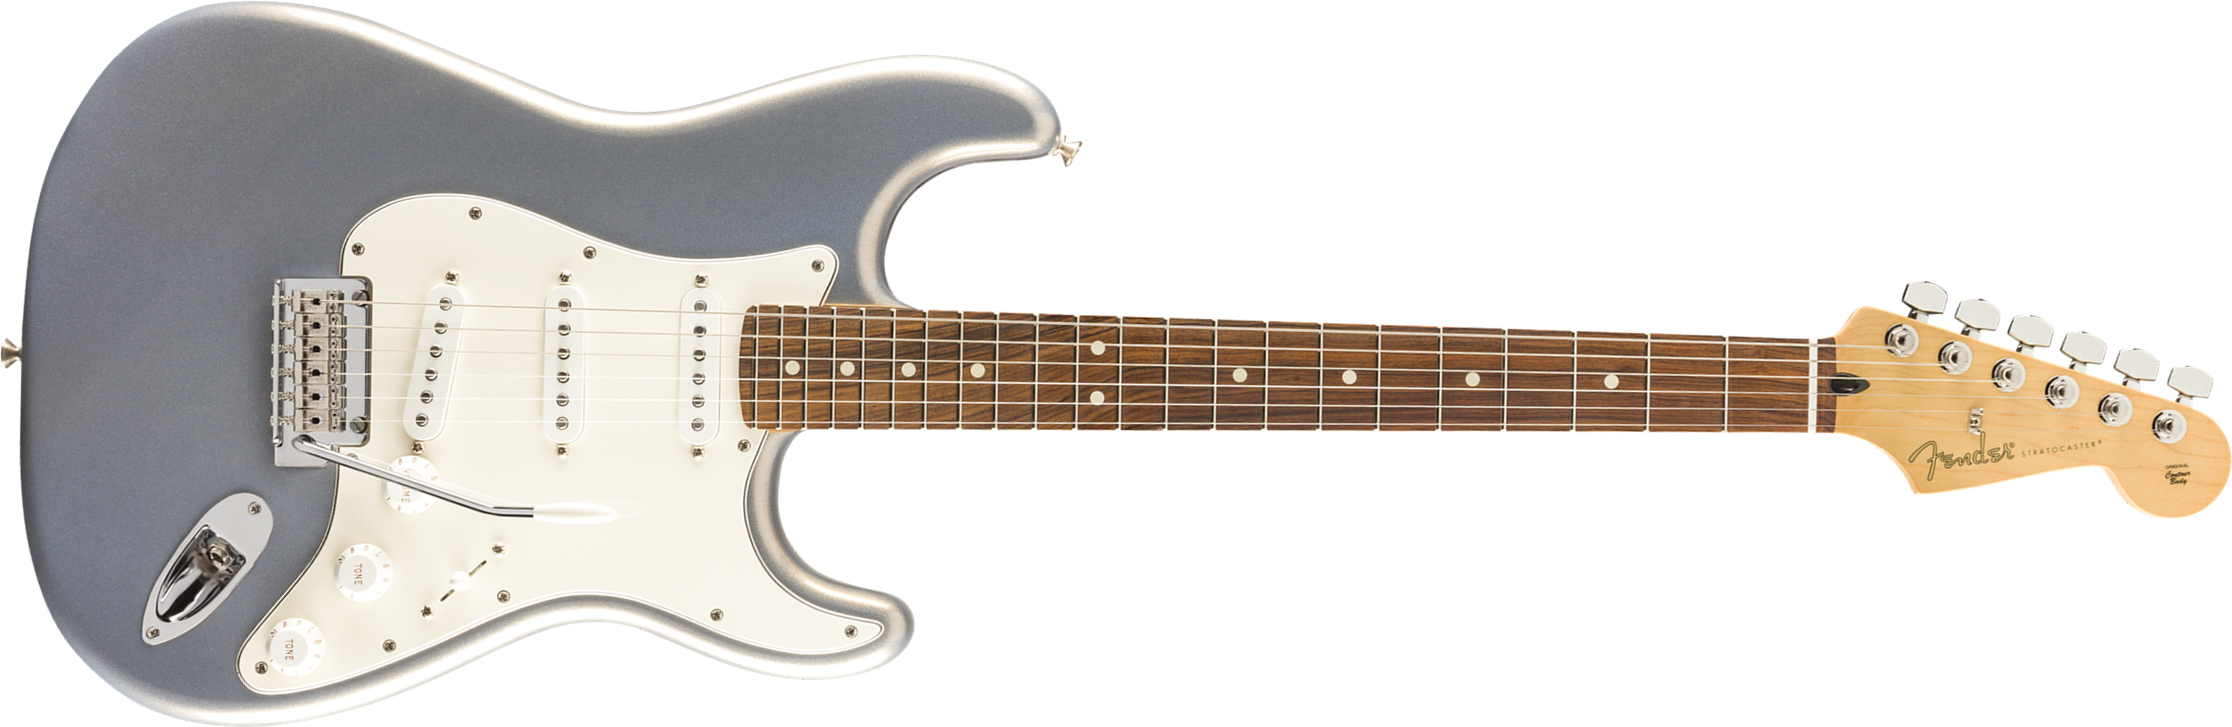 Fender Strat Player Mex 3s Trem Pf - Silver - Guitare Électrique Forme Str - Main picture